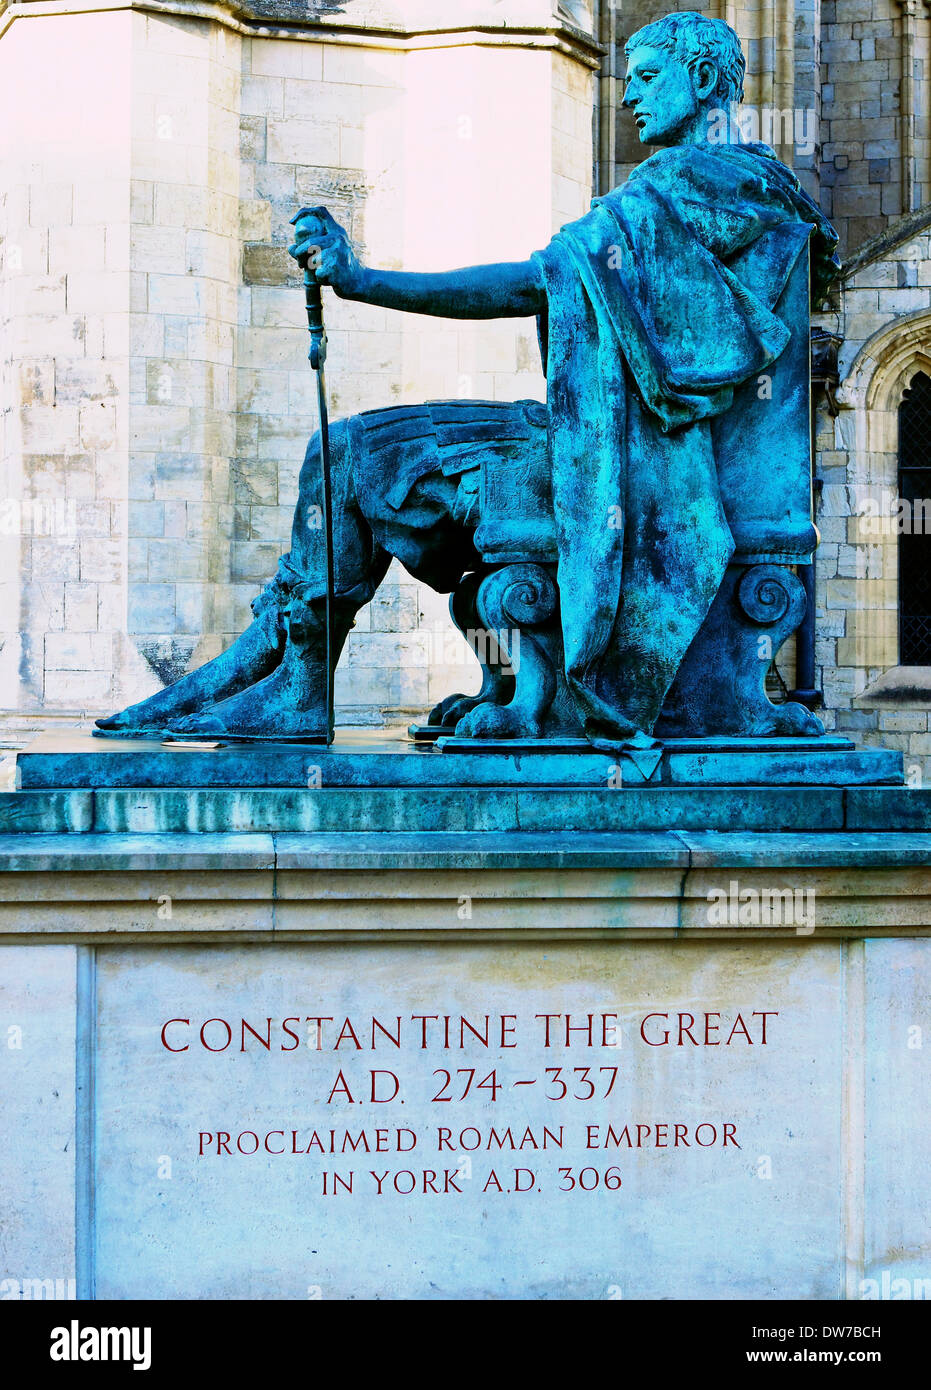 Statue de bronze de Constantin le Grand empereur de Rome par Philip Jackson à l'extérieur de la cathédrale de York North Yorkshire Angleterre Banque D'Images